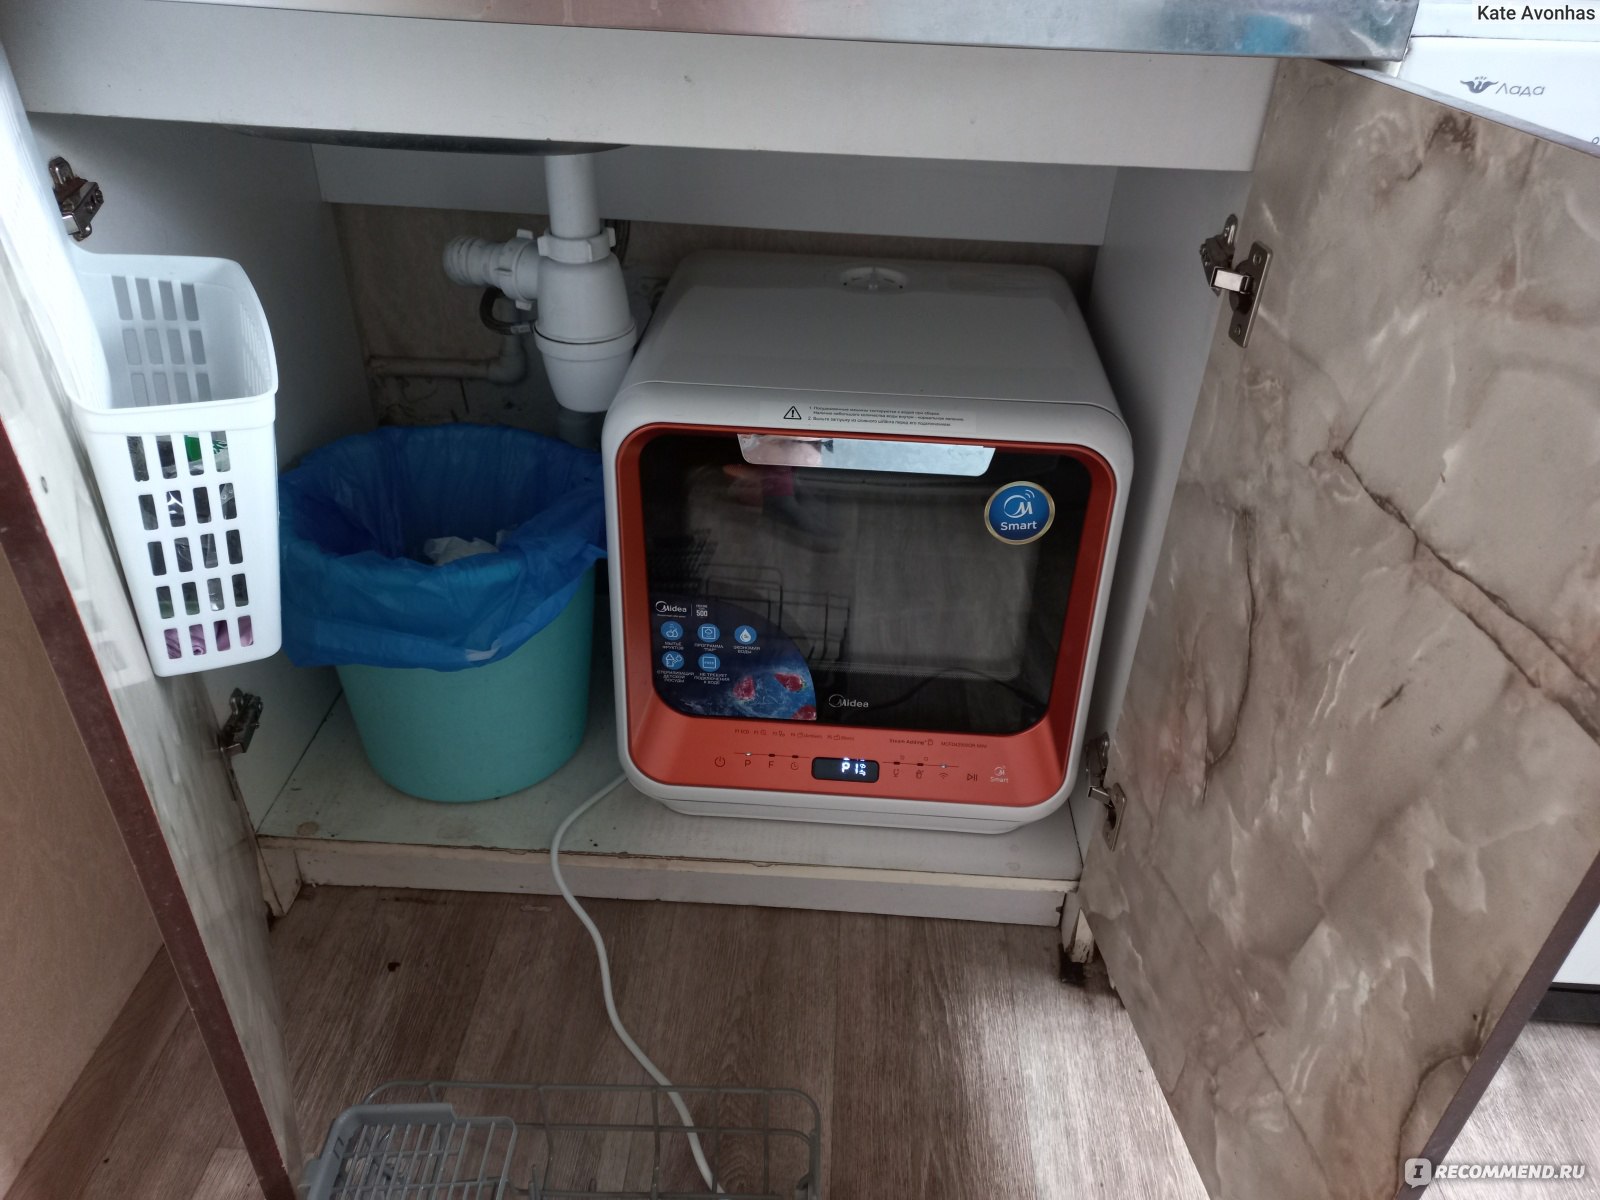 Посудомоечная машина Midea MCFD42900MINI-i с Wi-Fi фото